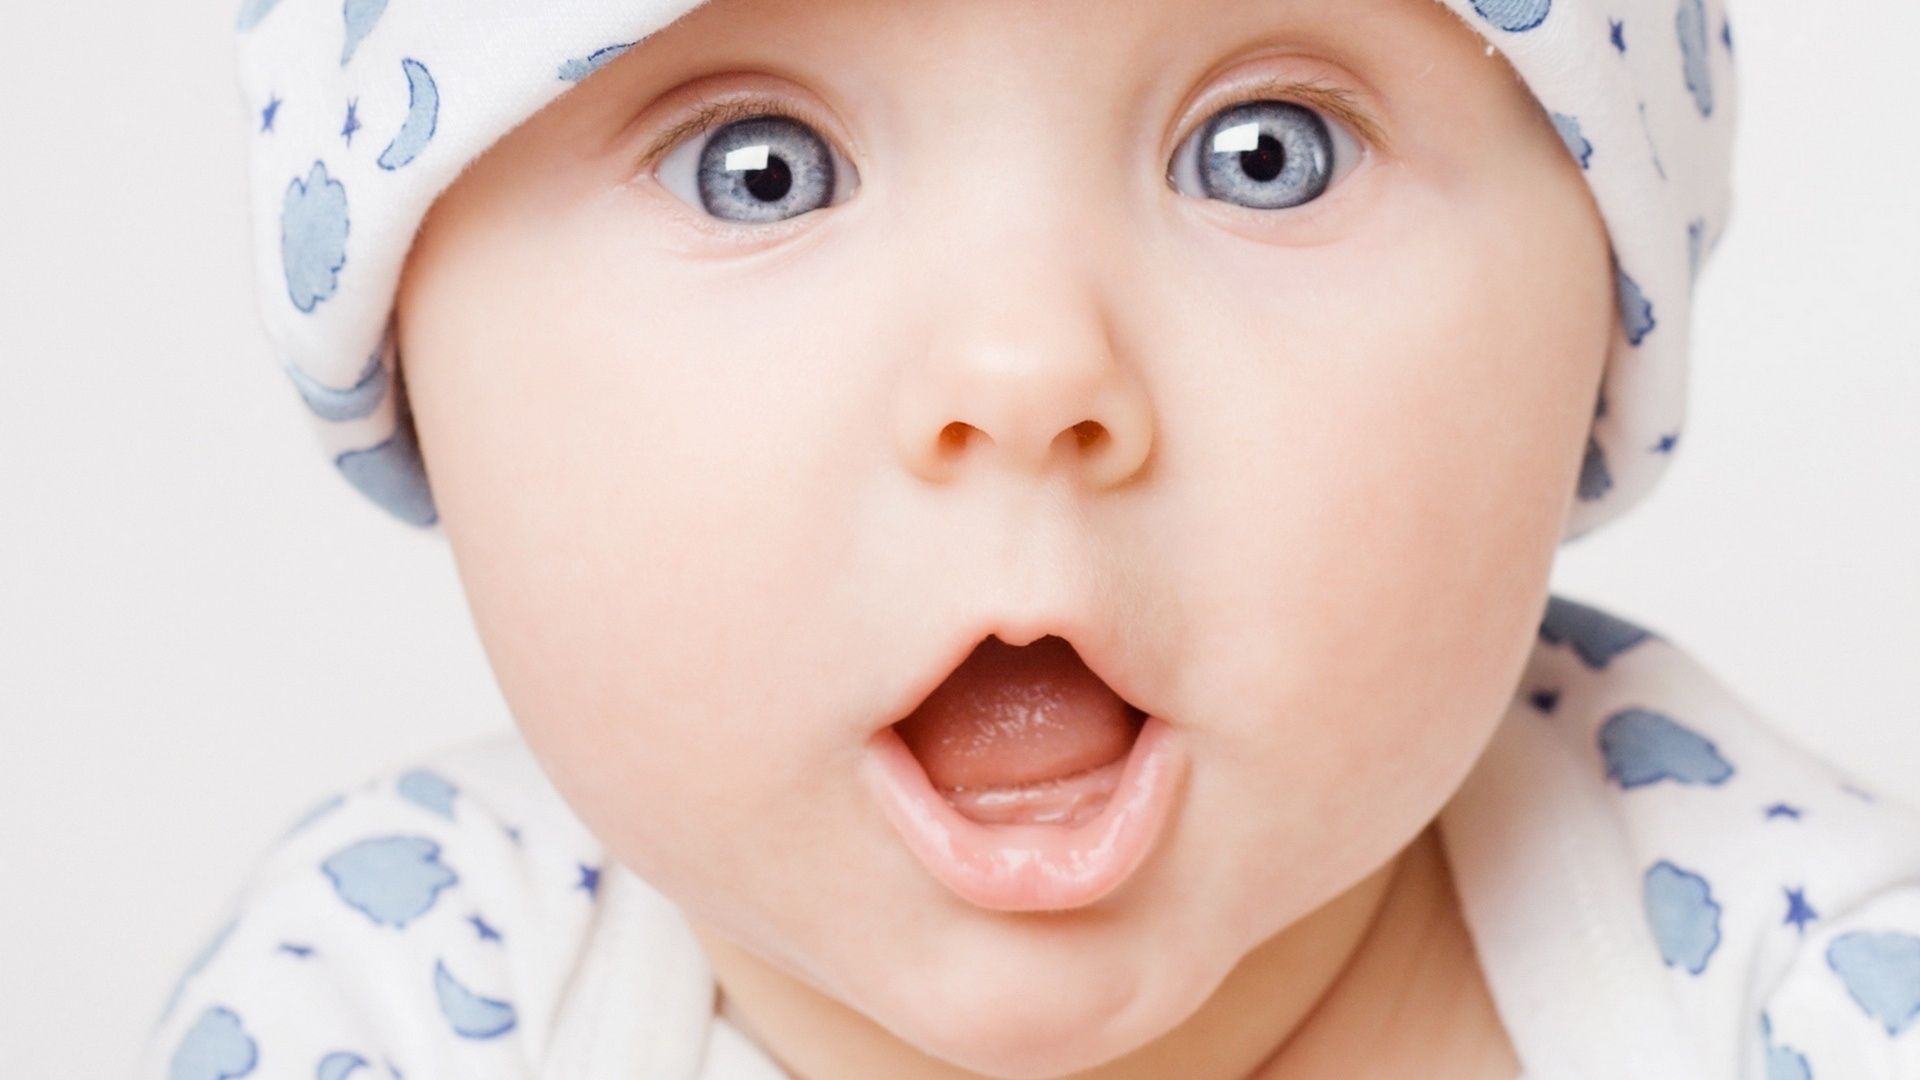 Cute Baby Smile Face Photos Wallpaper - World Top 10 Baby - 1920x1080  Wallpaper 